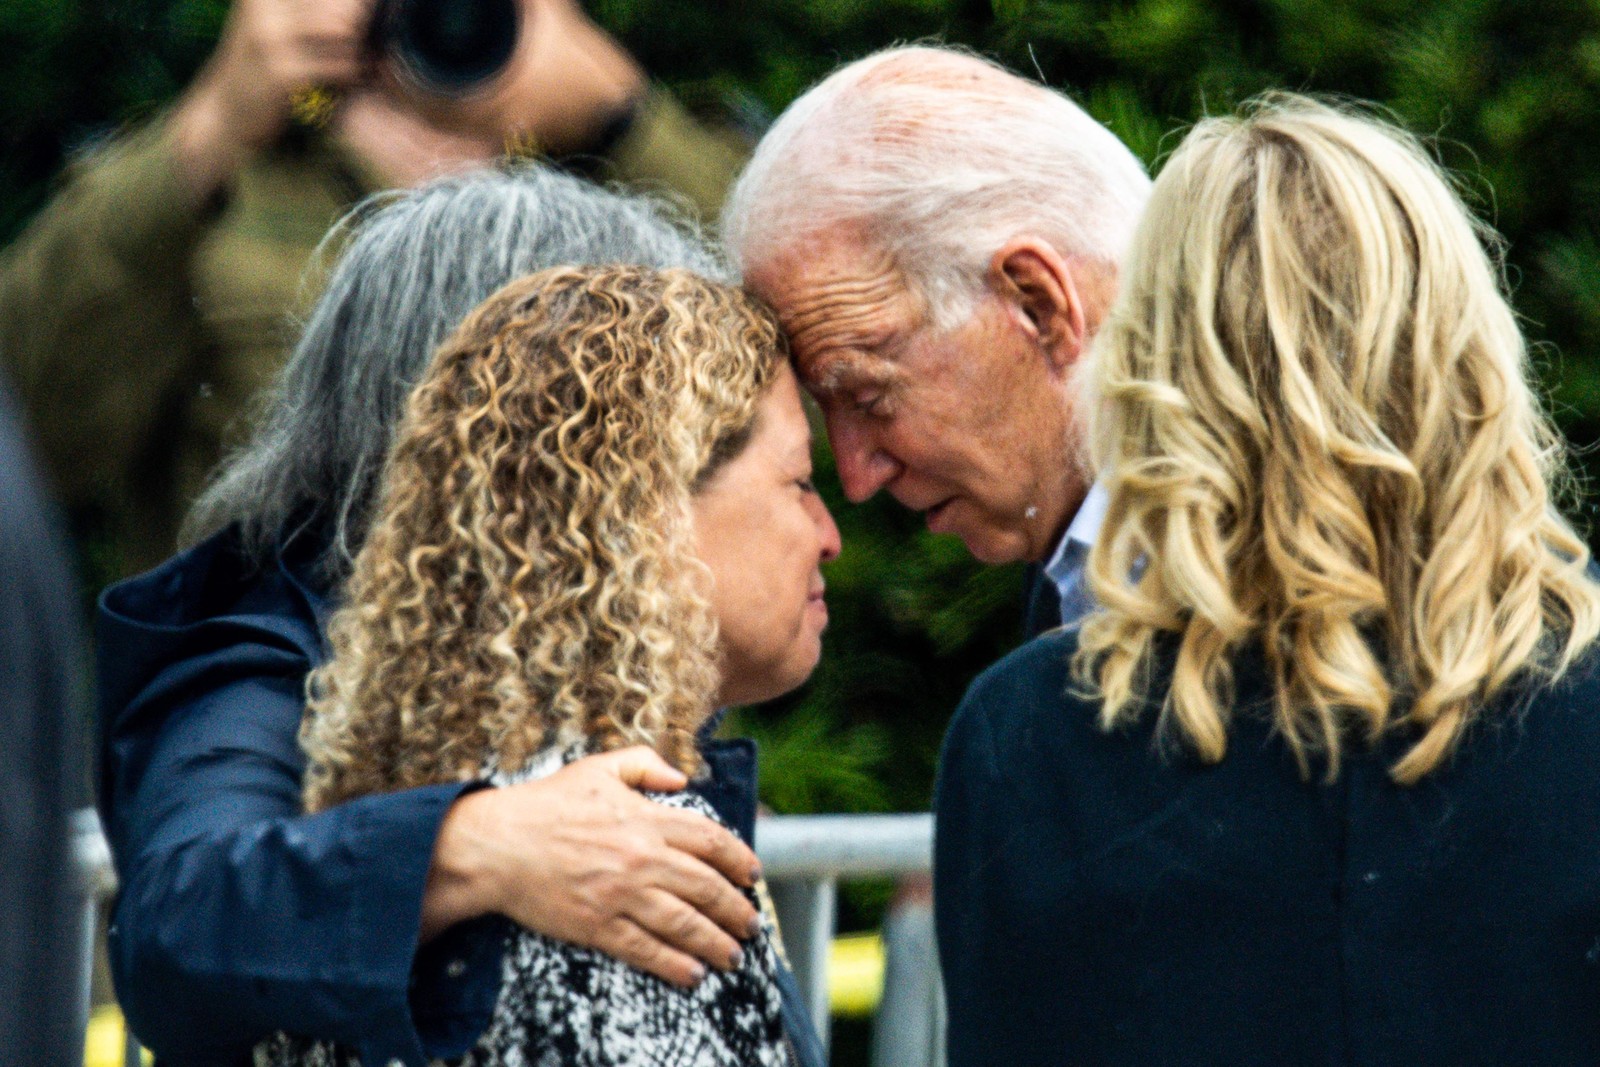 O presidente dos EUA, Joe Biden, e a primeira-dama dos EUA, Jill Biden, encontram a prefeita do condado de Miami Dade, Daniella Levine Cava, em visita memorial perto do prédio de 12 andares quye desmoronou em Surfside, Flórida, deixando 18 mortos e 140 desaparecidos até agora AFP